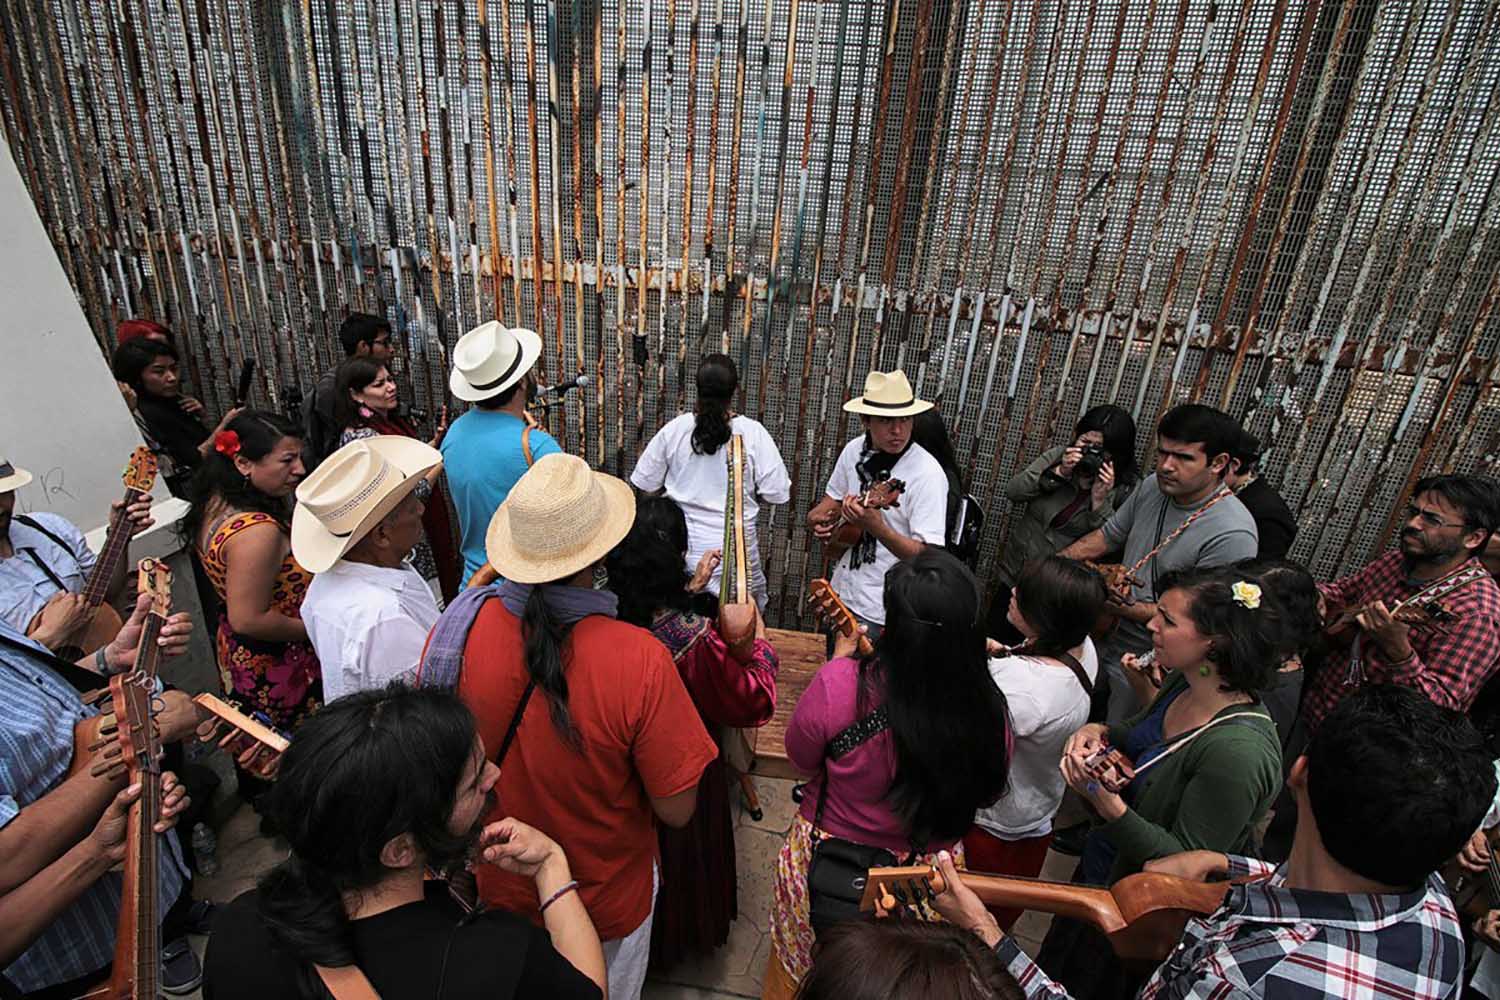 fandango-fronterizo-frontera-mexico-estados-unidos-fiesta-cultural